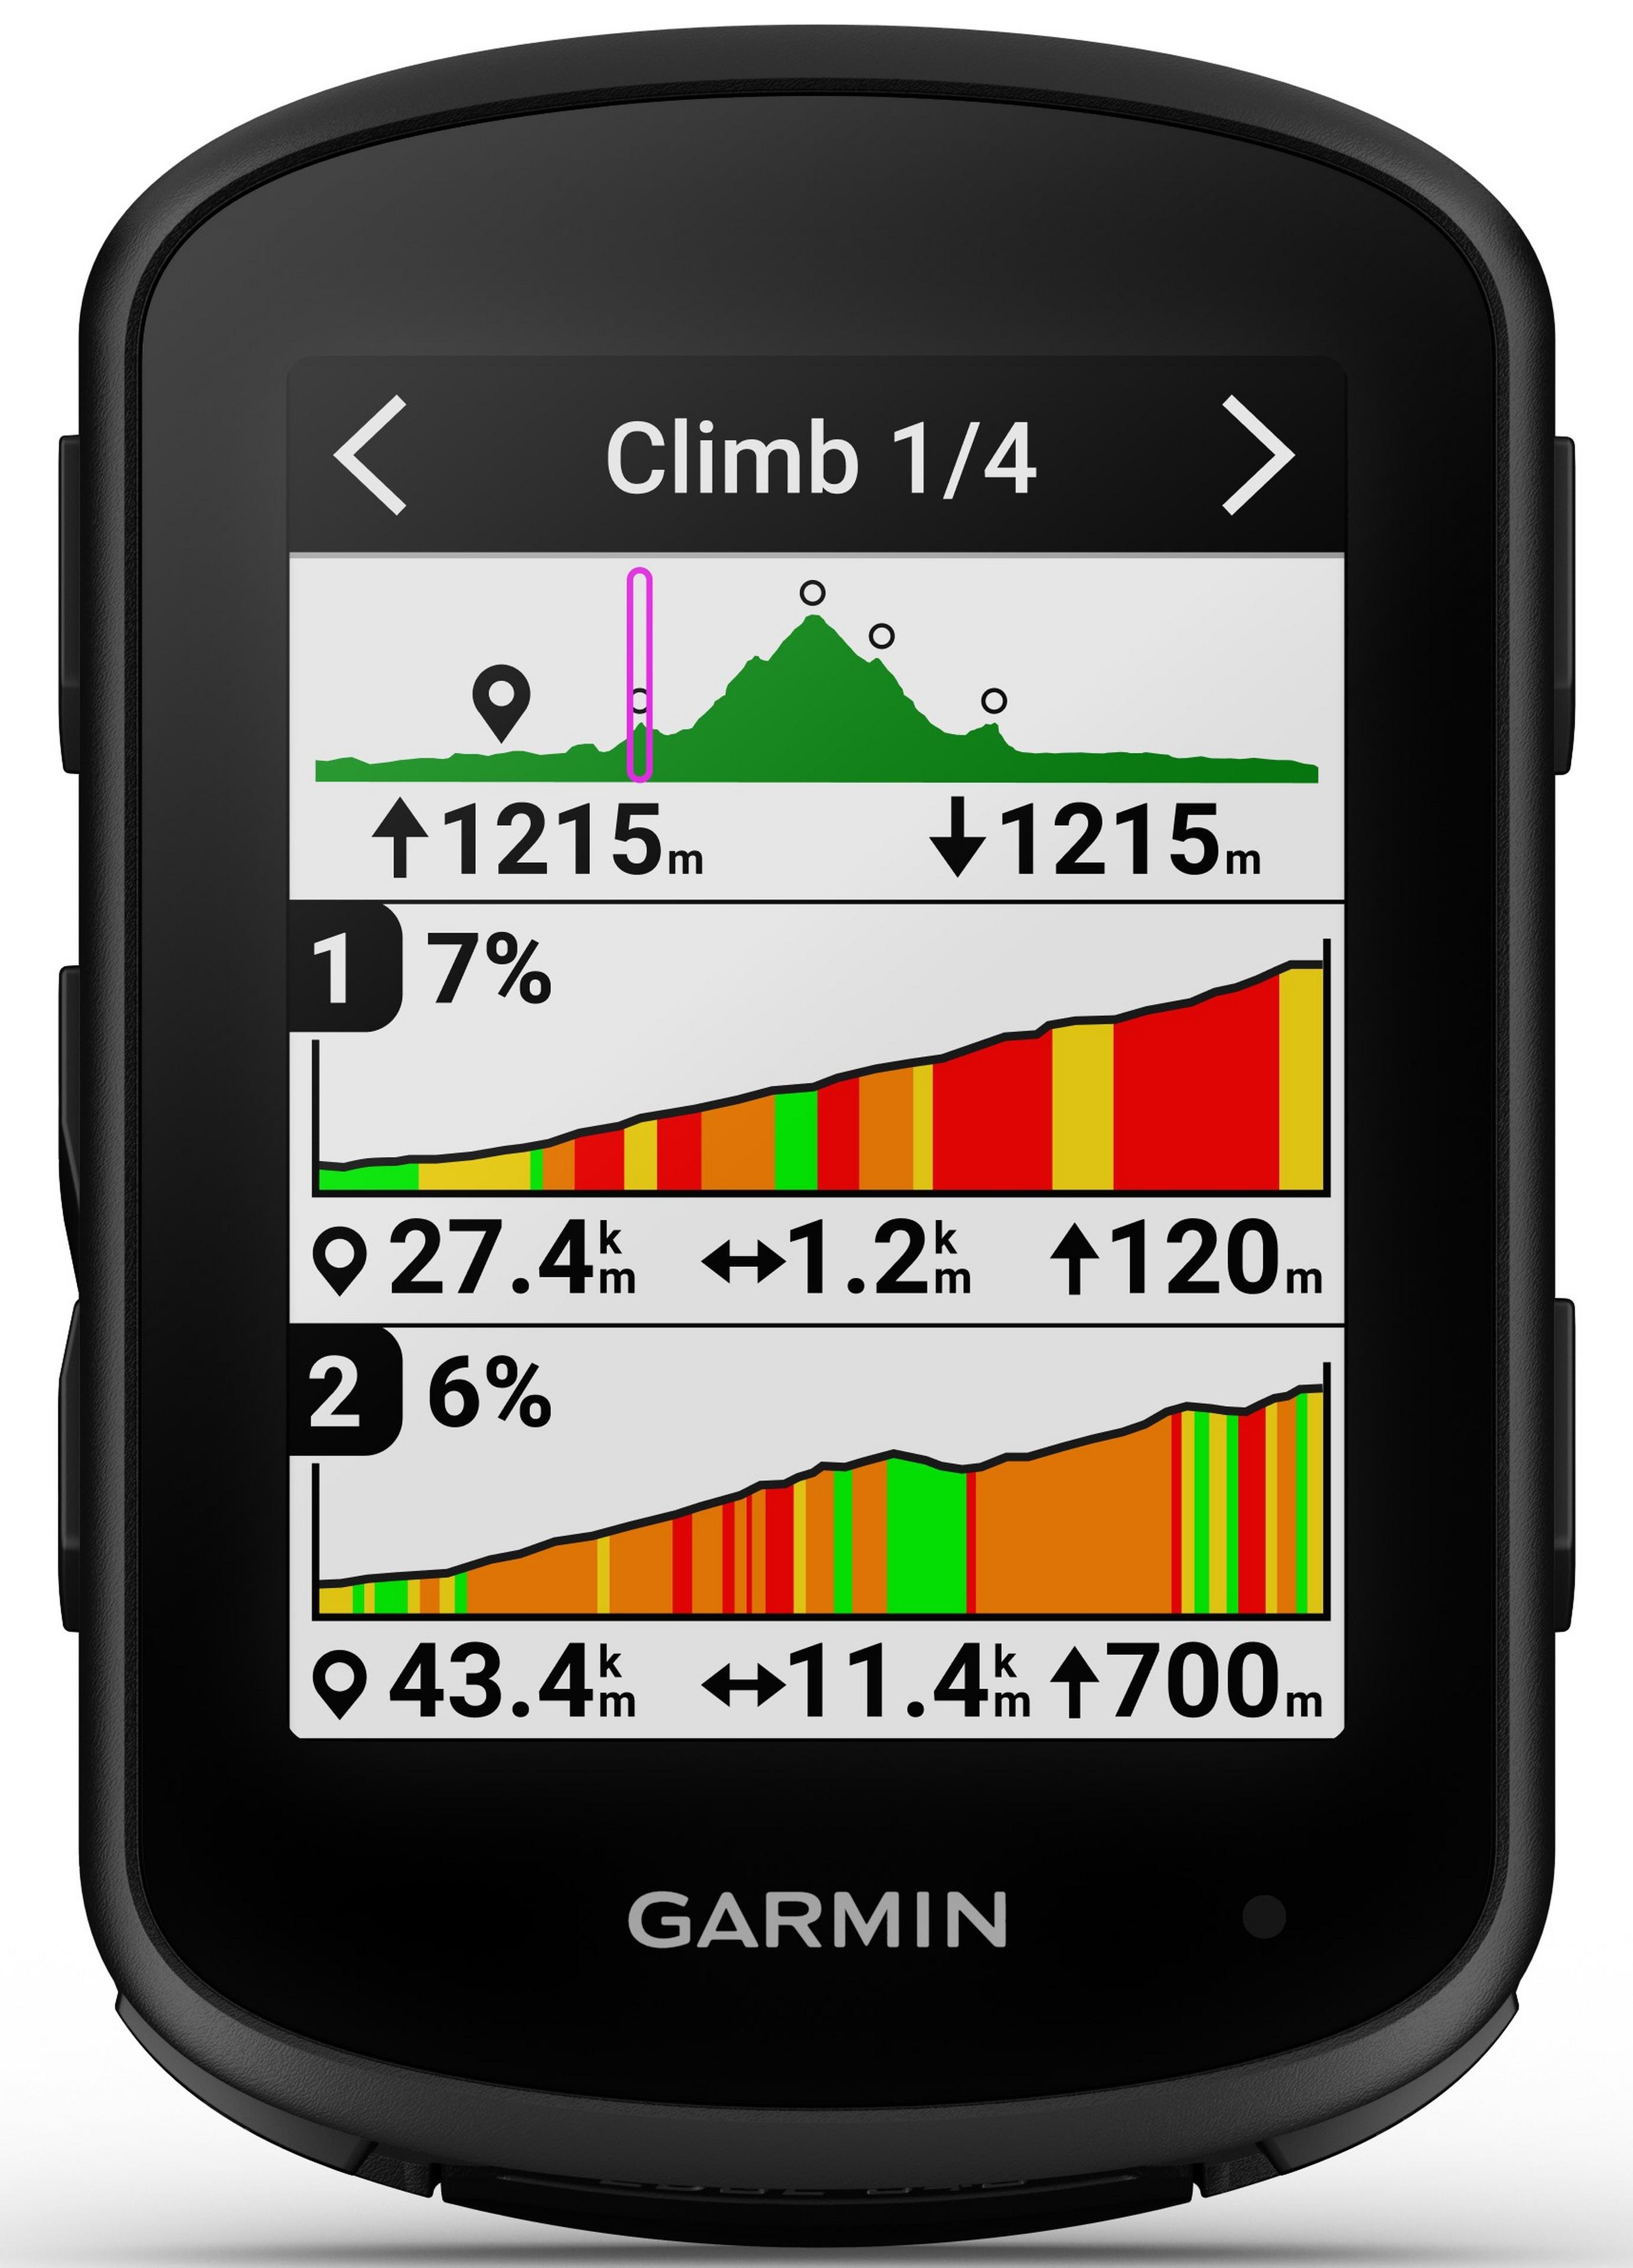 Garmin Edge® 840, Cycling Computer